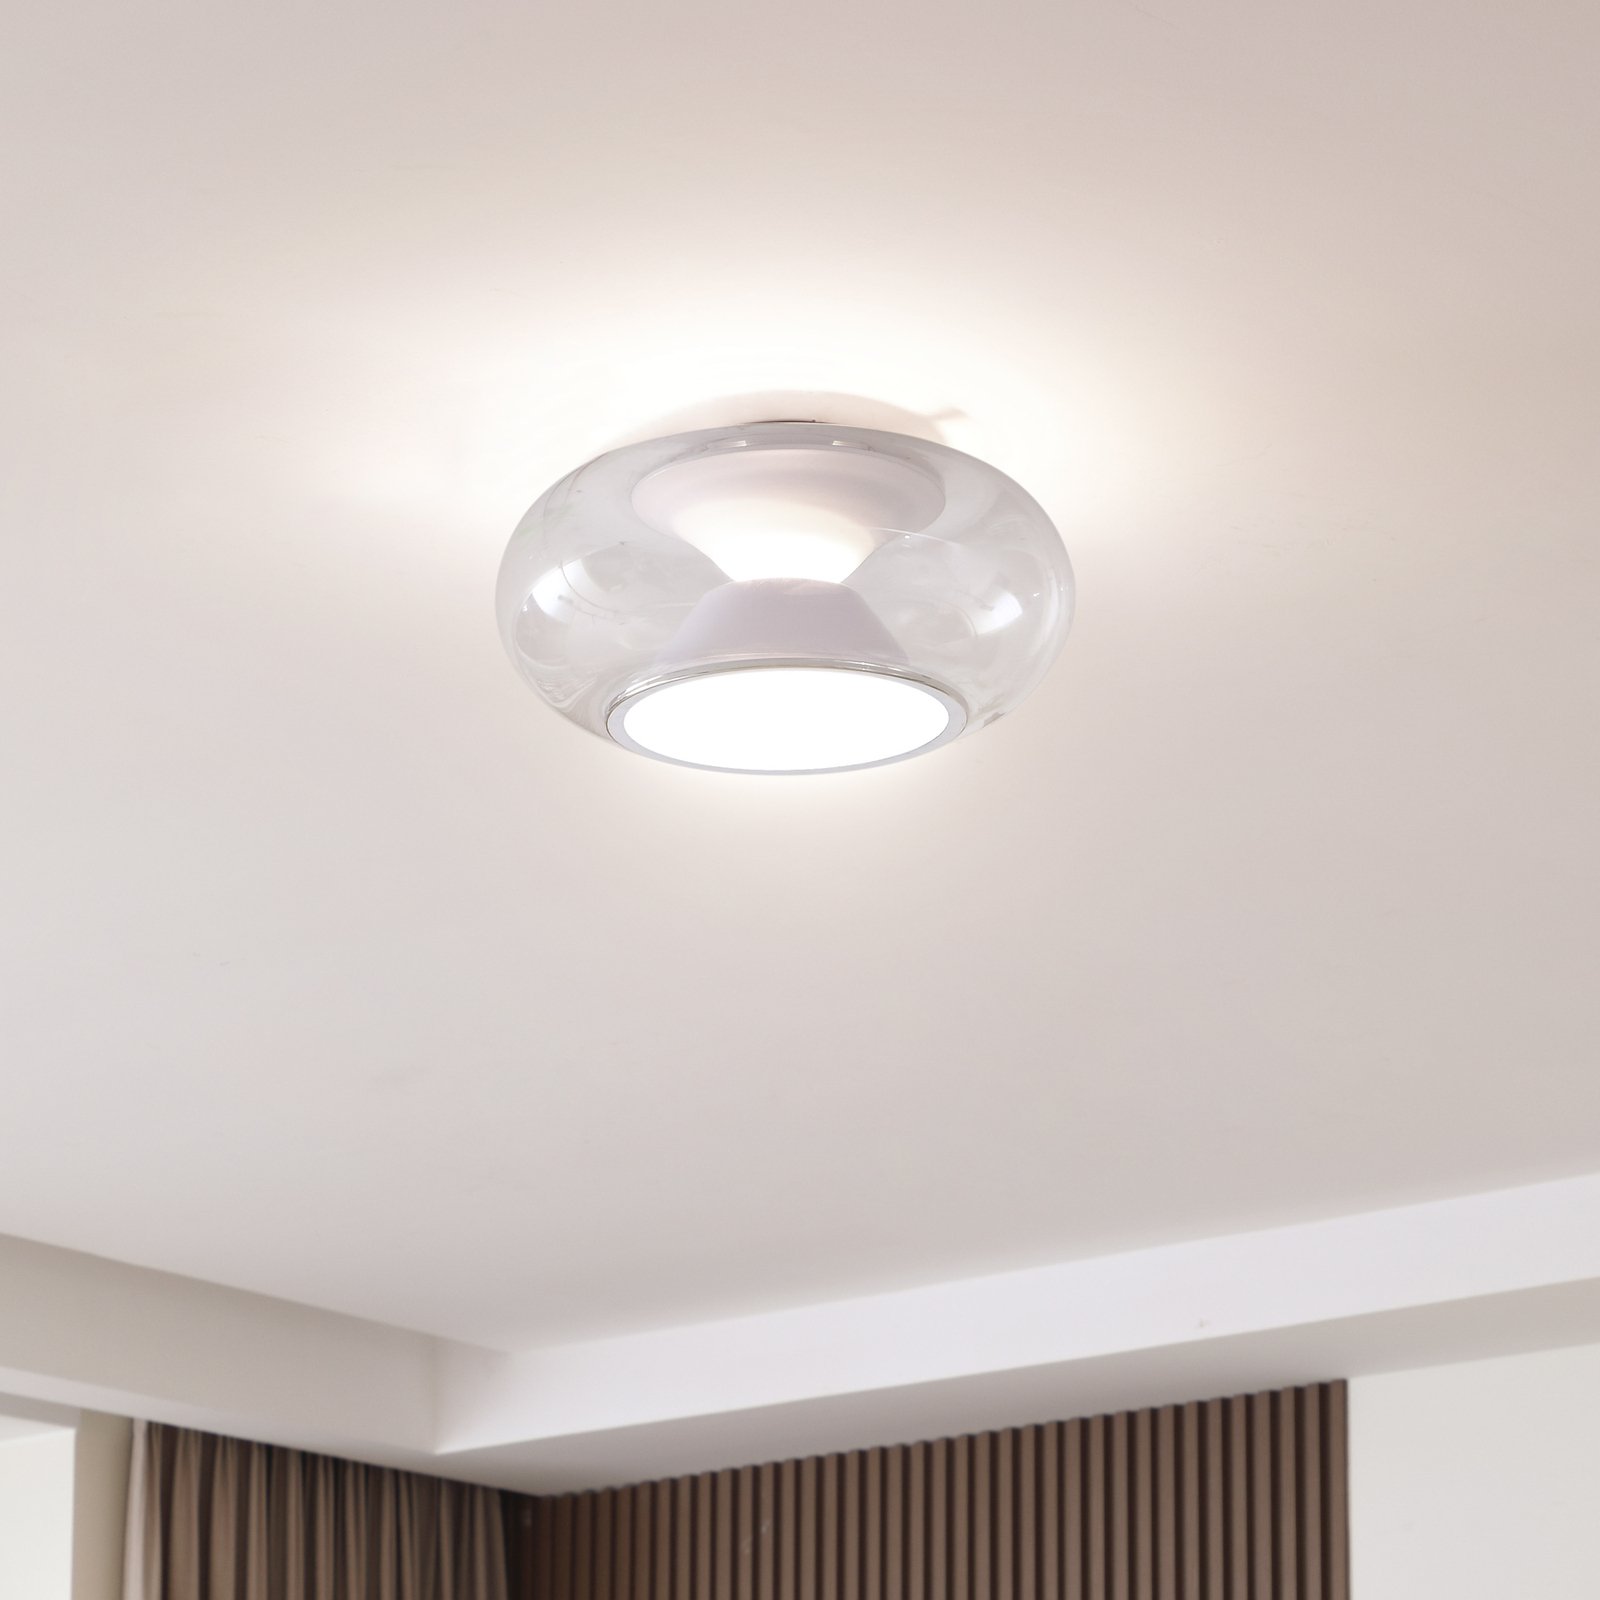 Lucande LED ceiling light Orasa, glass, white/clear, Ø 43 cm